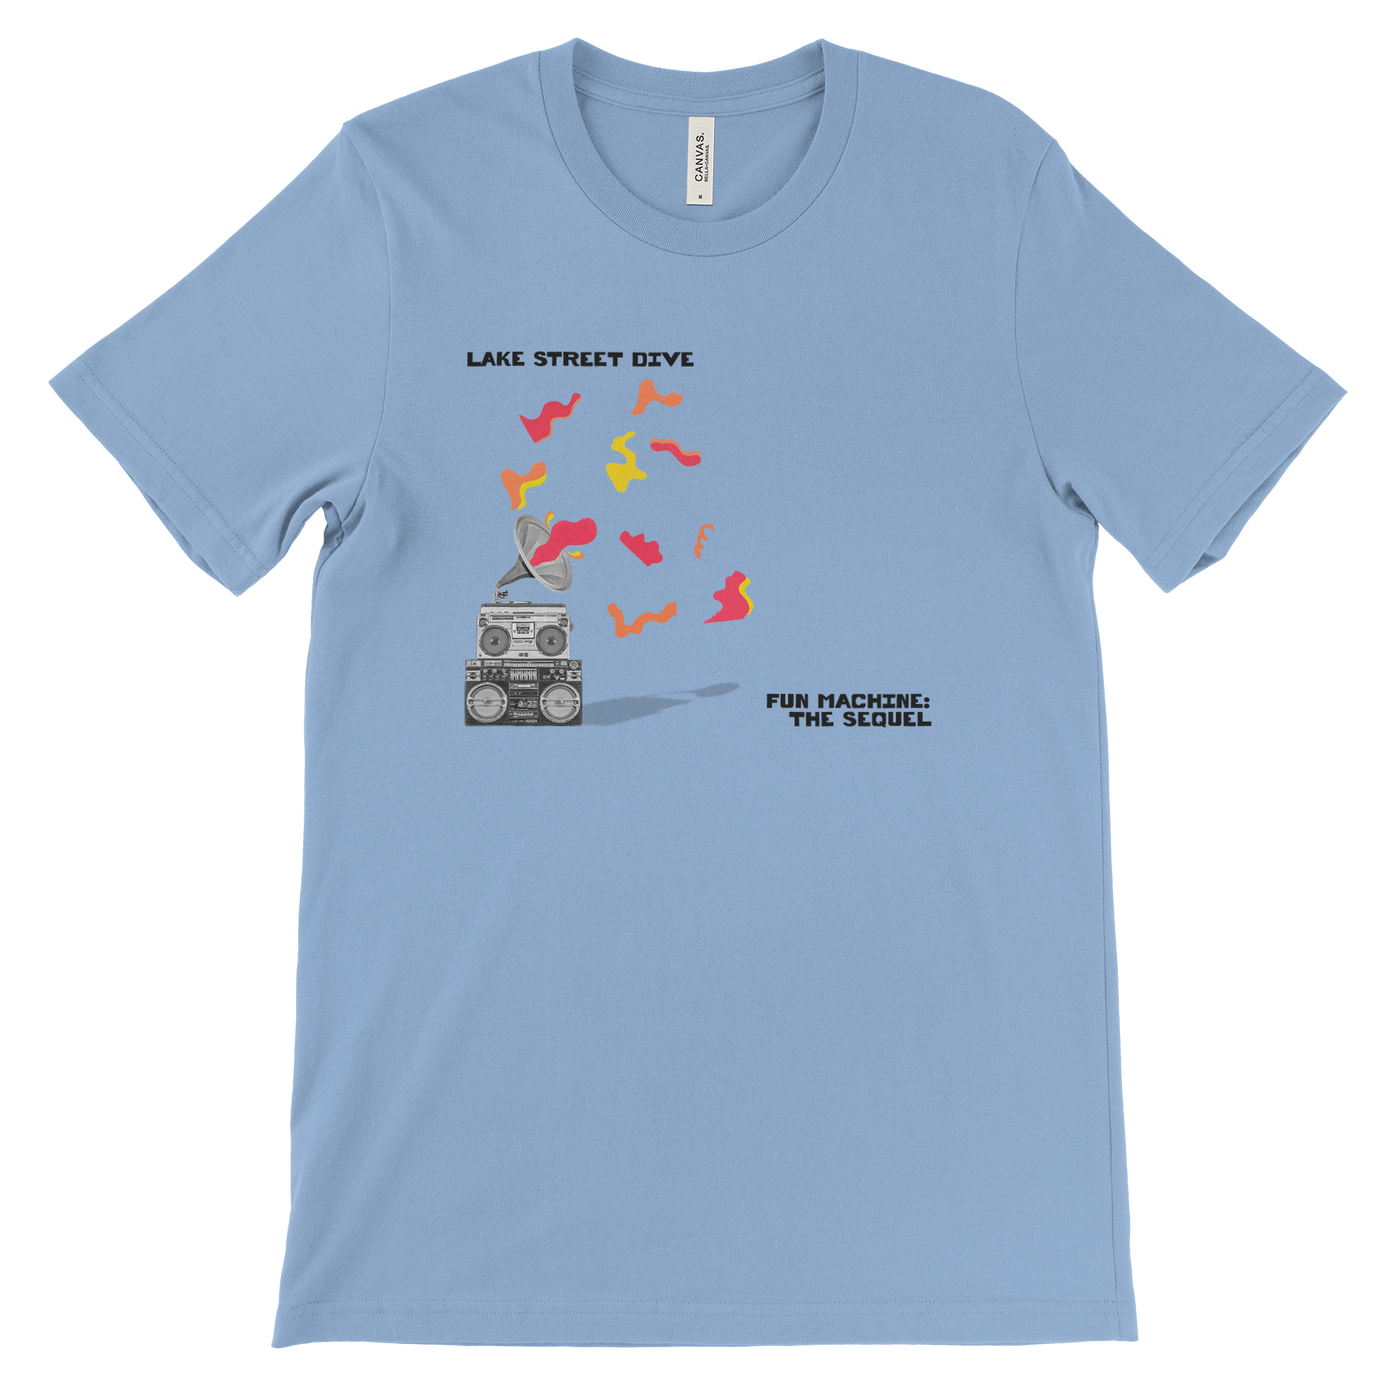 Fun Machine: The Sequel CD EP + T-shirt